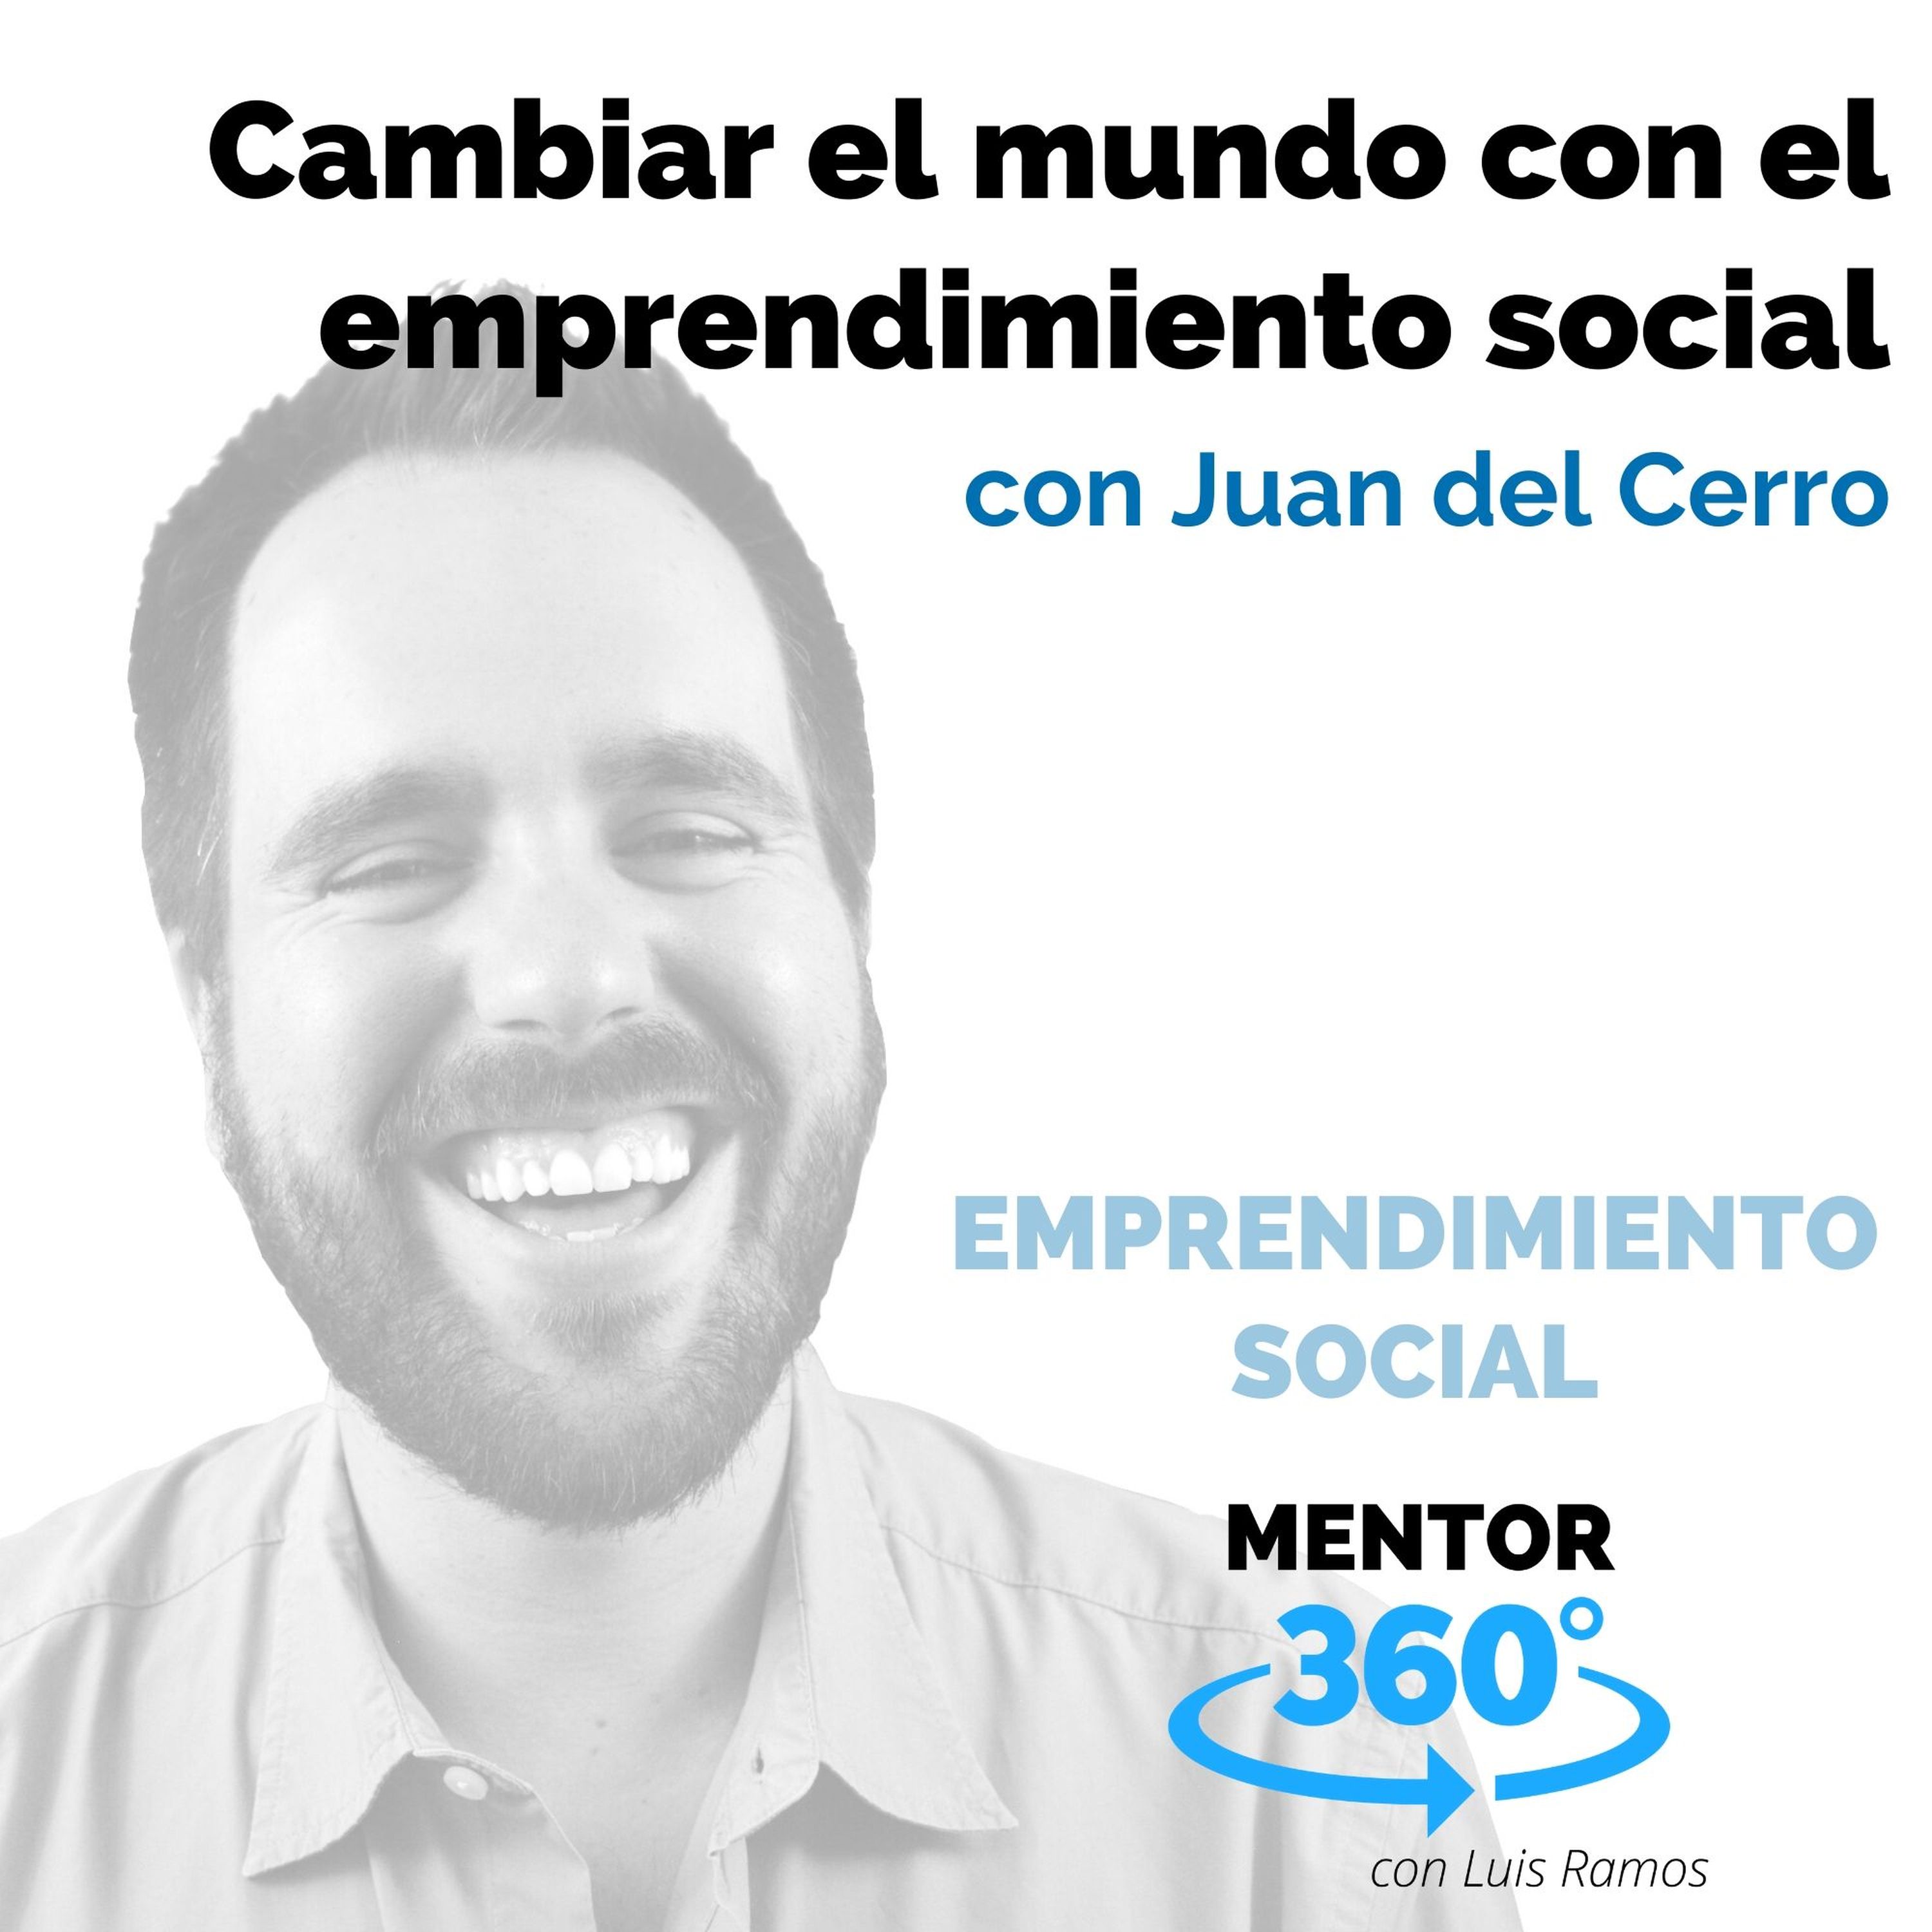 Cambiar el mundo con el emprendimiento social, con Juan del Cerro - EMPRENDIMIENTO SOCIAL - MENTOR360